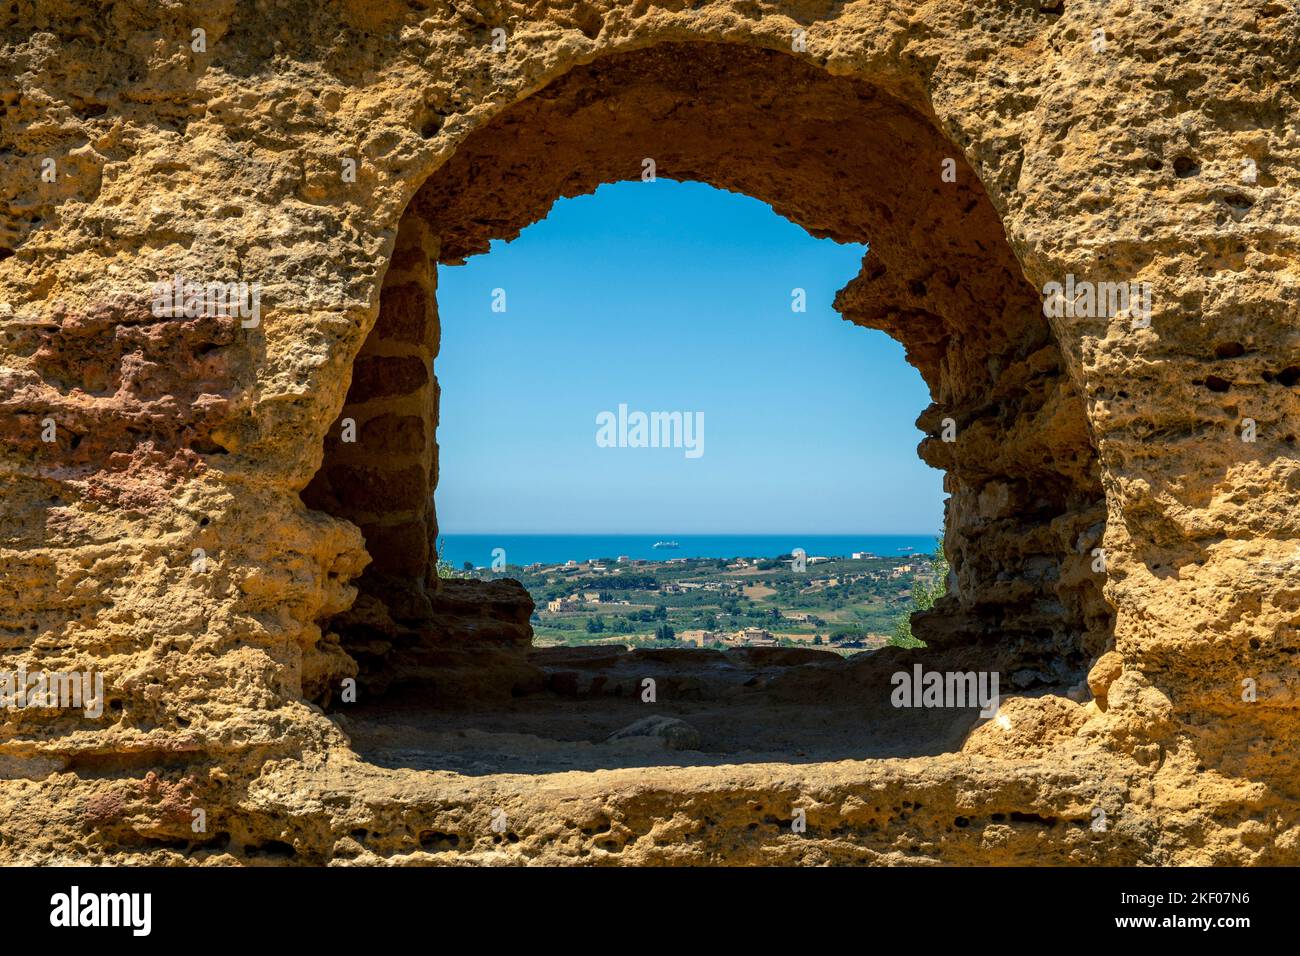 Agrigento, Sicile, Italie - 12 juillet 2020: Mer Méditerranée vue par un trou dans le mur d'un temple grec ancien Banque D'Images